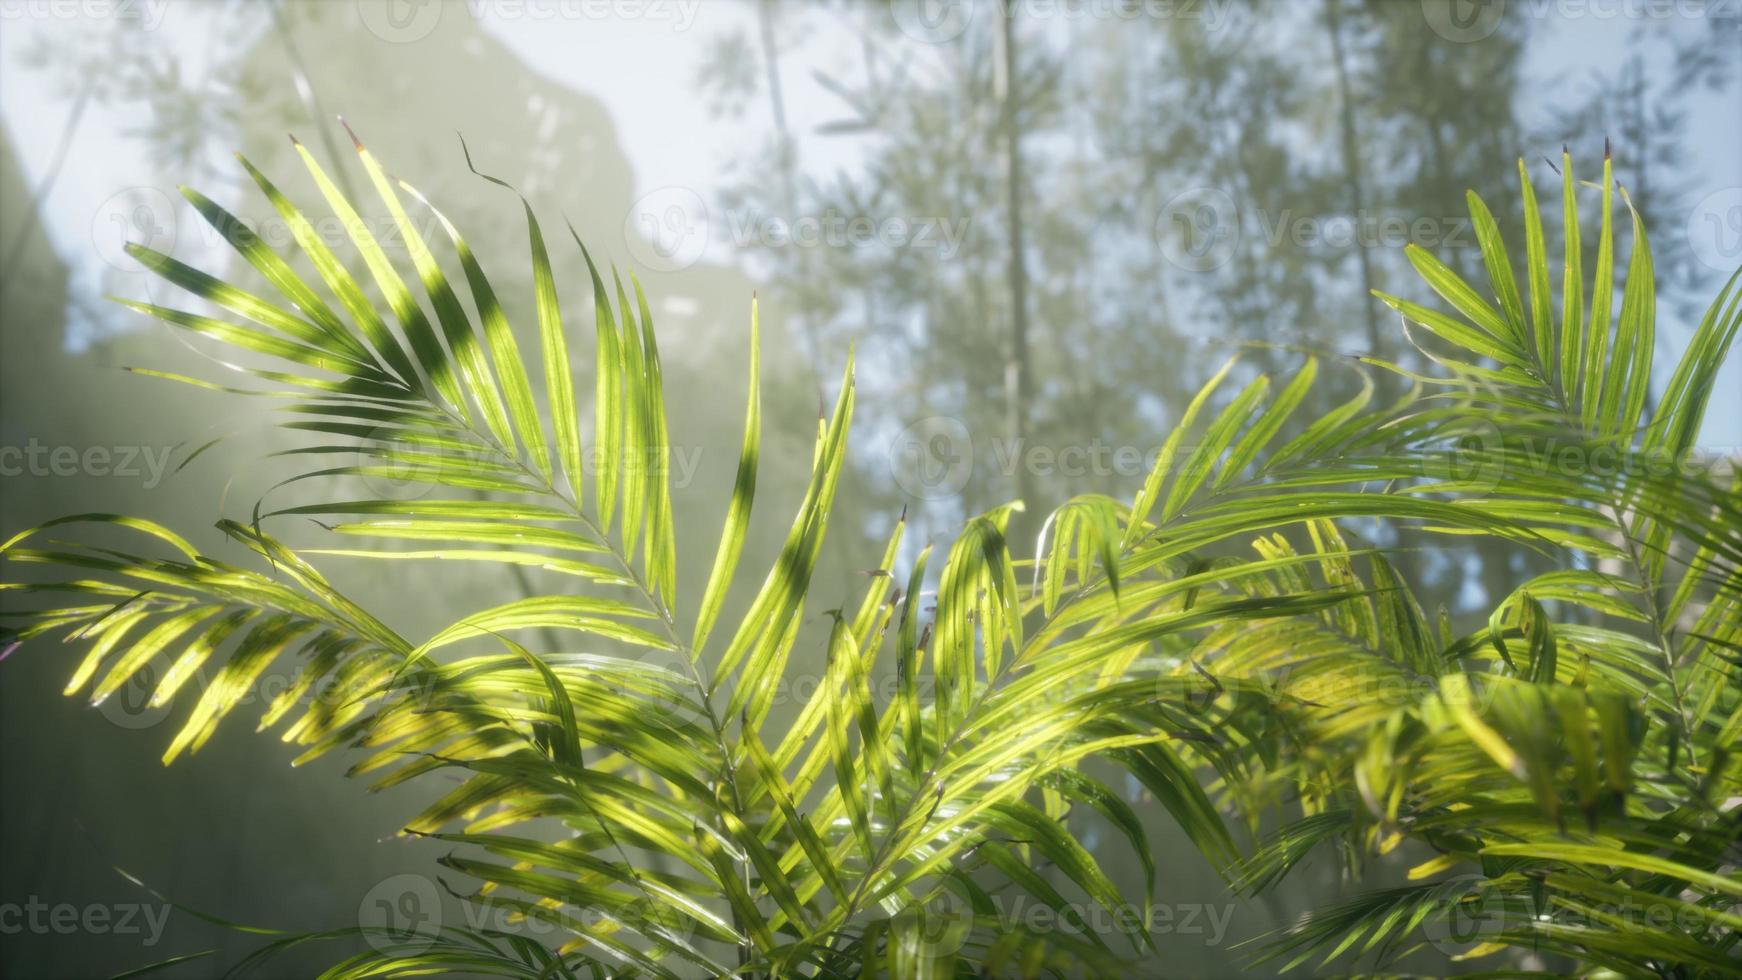 helder licht schijnt door de vochtige mistige mist en jungle bladeren foto